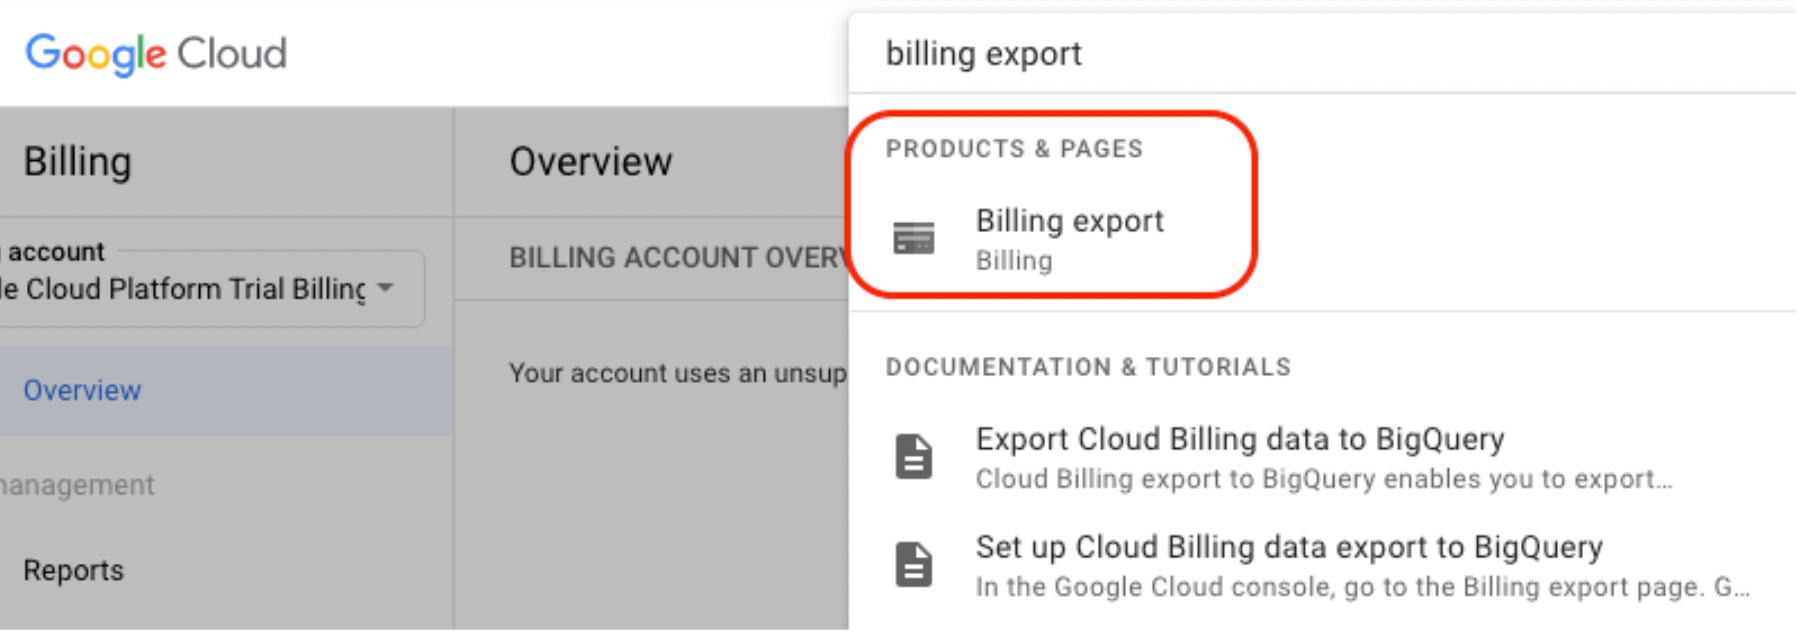 freemium-export-billing-search-billing.png